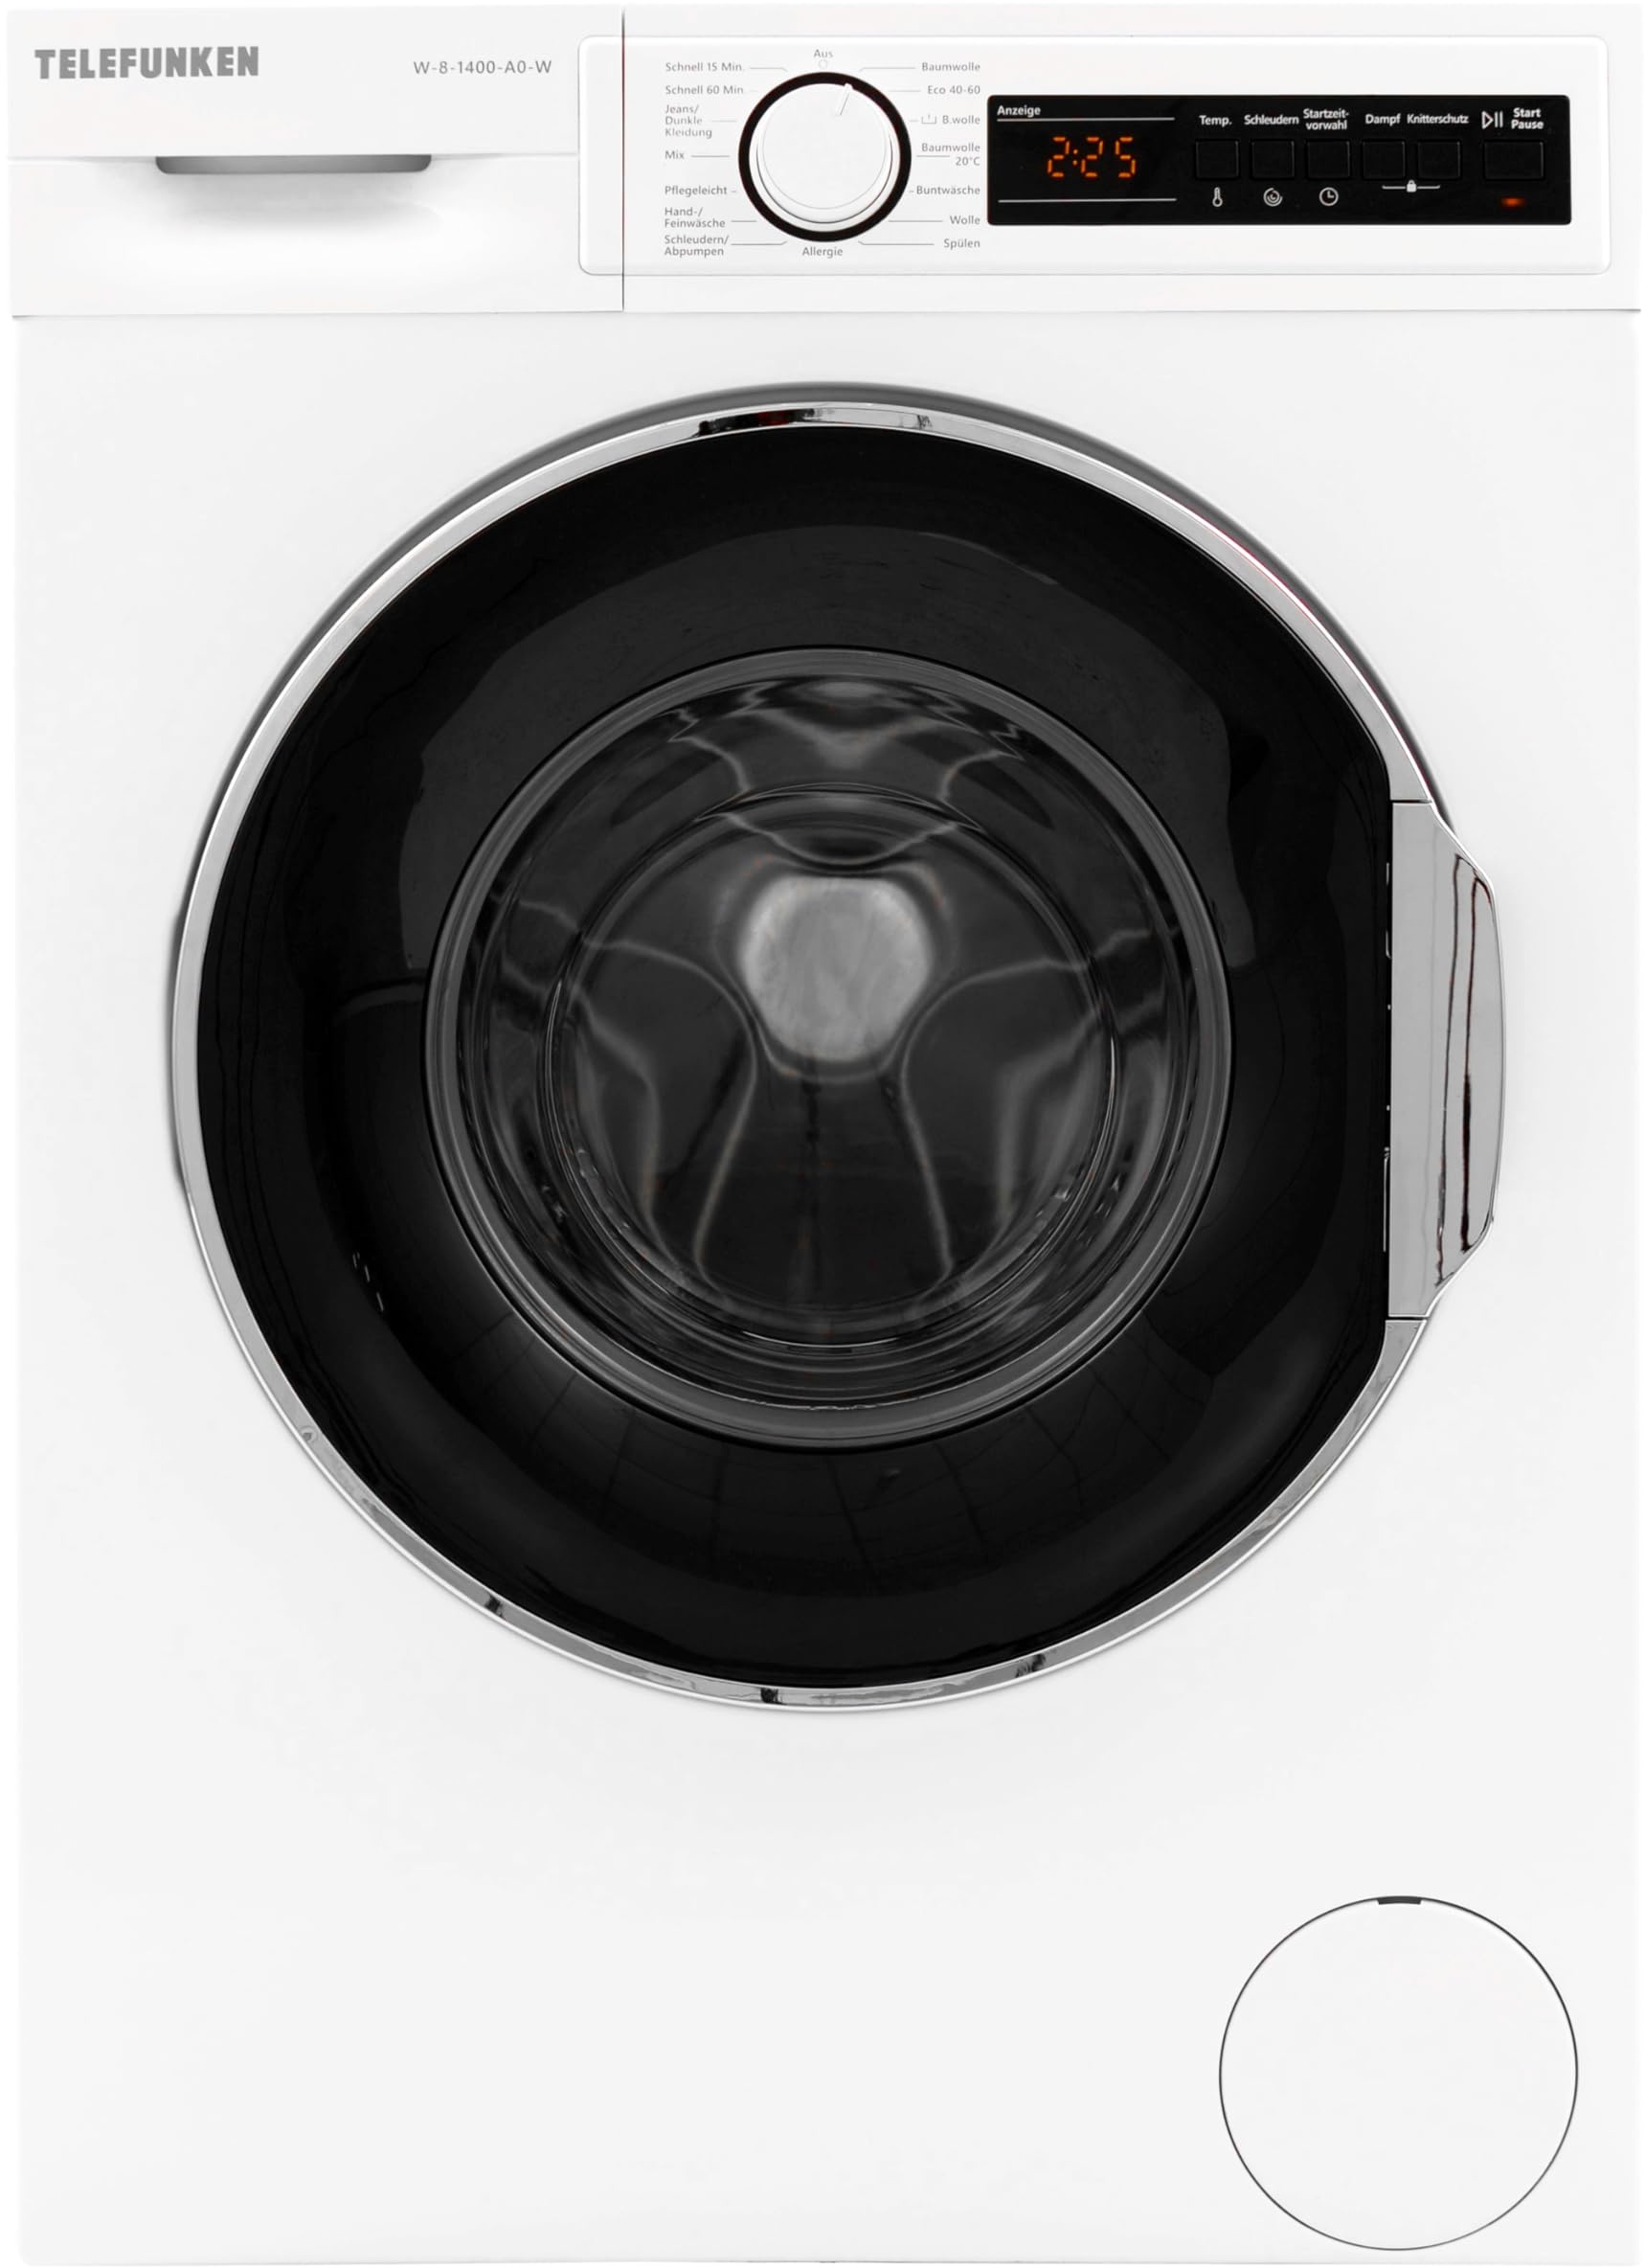 Telefunken W-8-1400-A0-W Waschmaschine 8 kg | Frontlader | 1400 U/Min | Energieklasse A | Dampffunktion | AquaStop | Überlaufschutz | 15 Programme | BLDC Motor | weiß